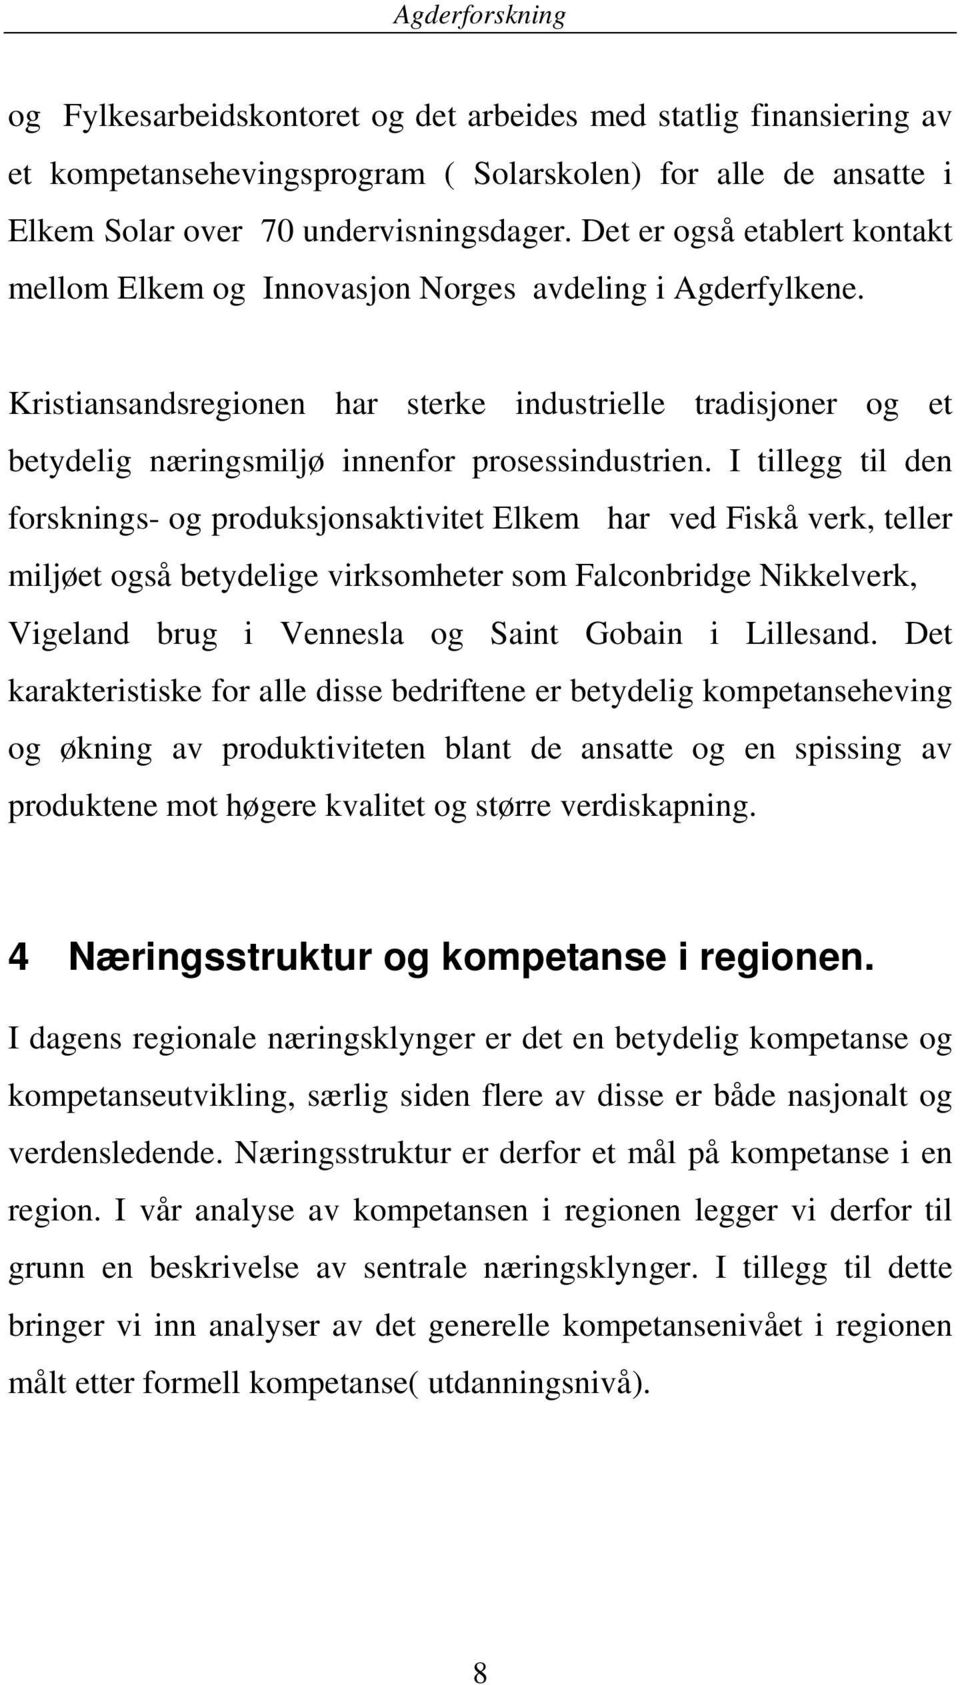 Kristiansandsregionen har sterke industrielle tradisjoner og et betydelig næringsmiljø innenfor prosessindustrien.